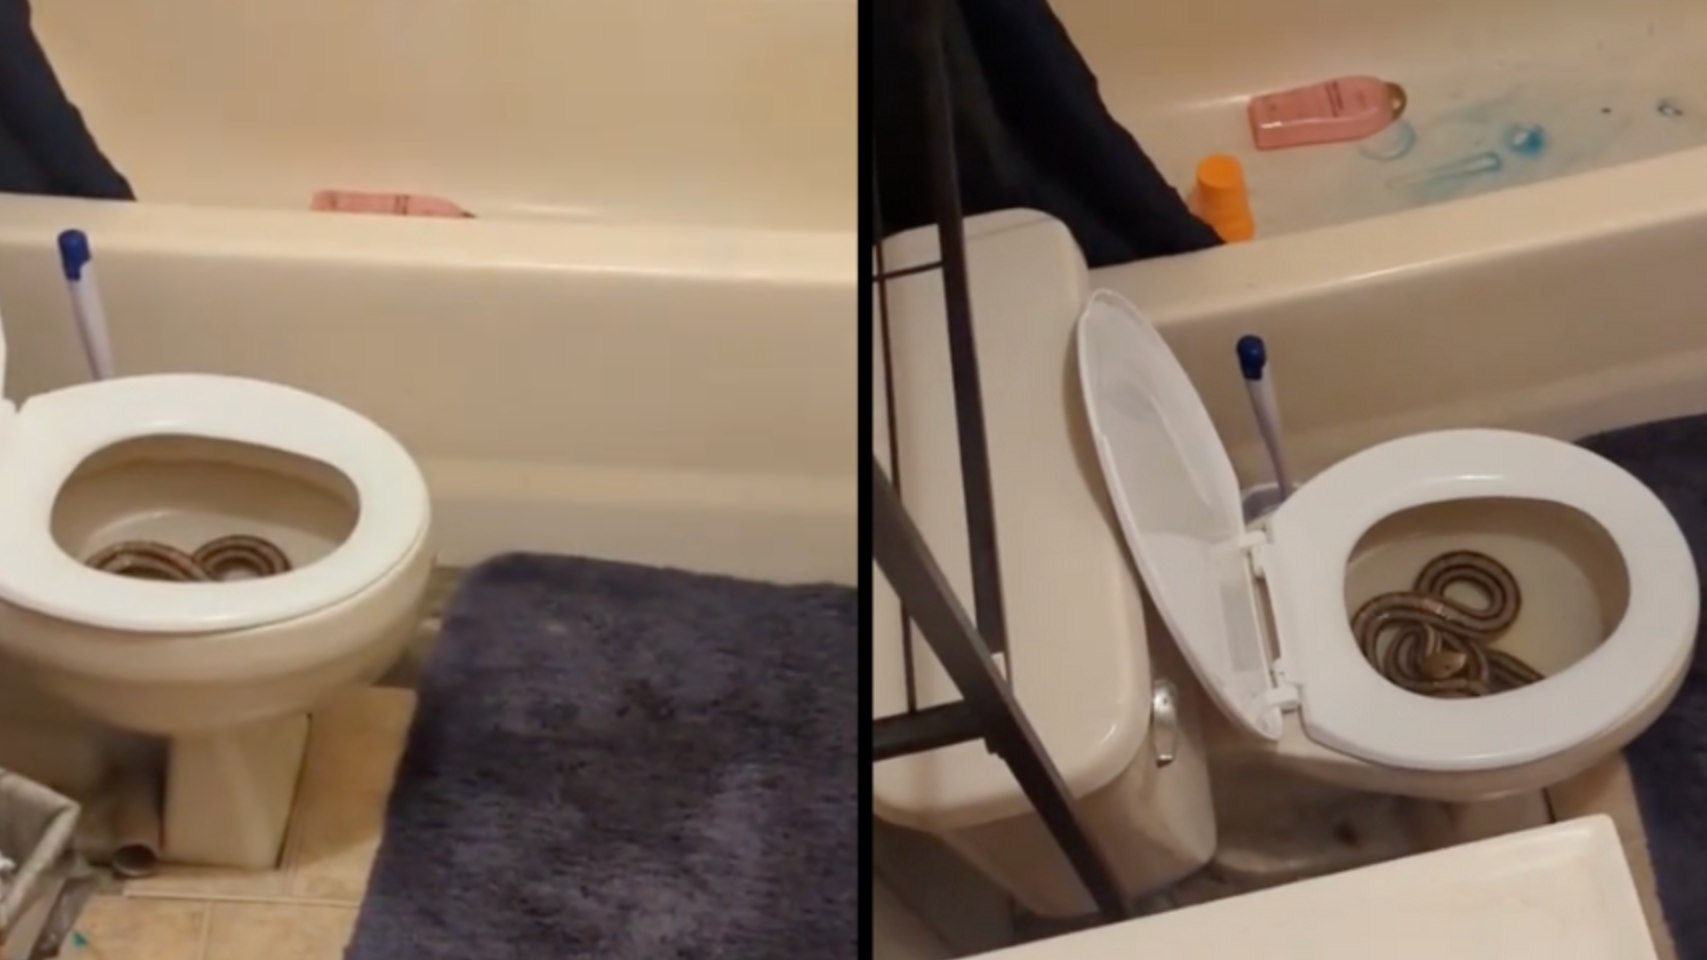 Australian woman bitten by snake in toilet - BBC News